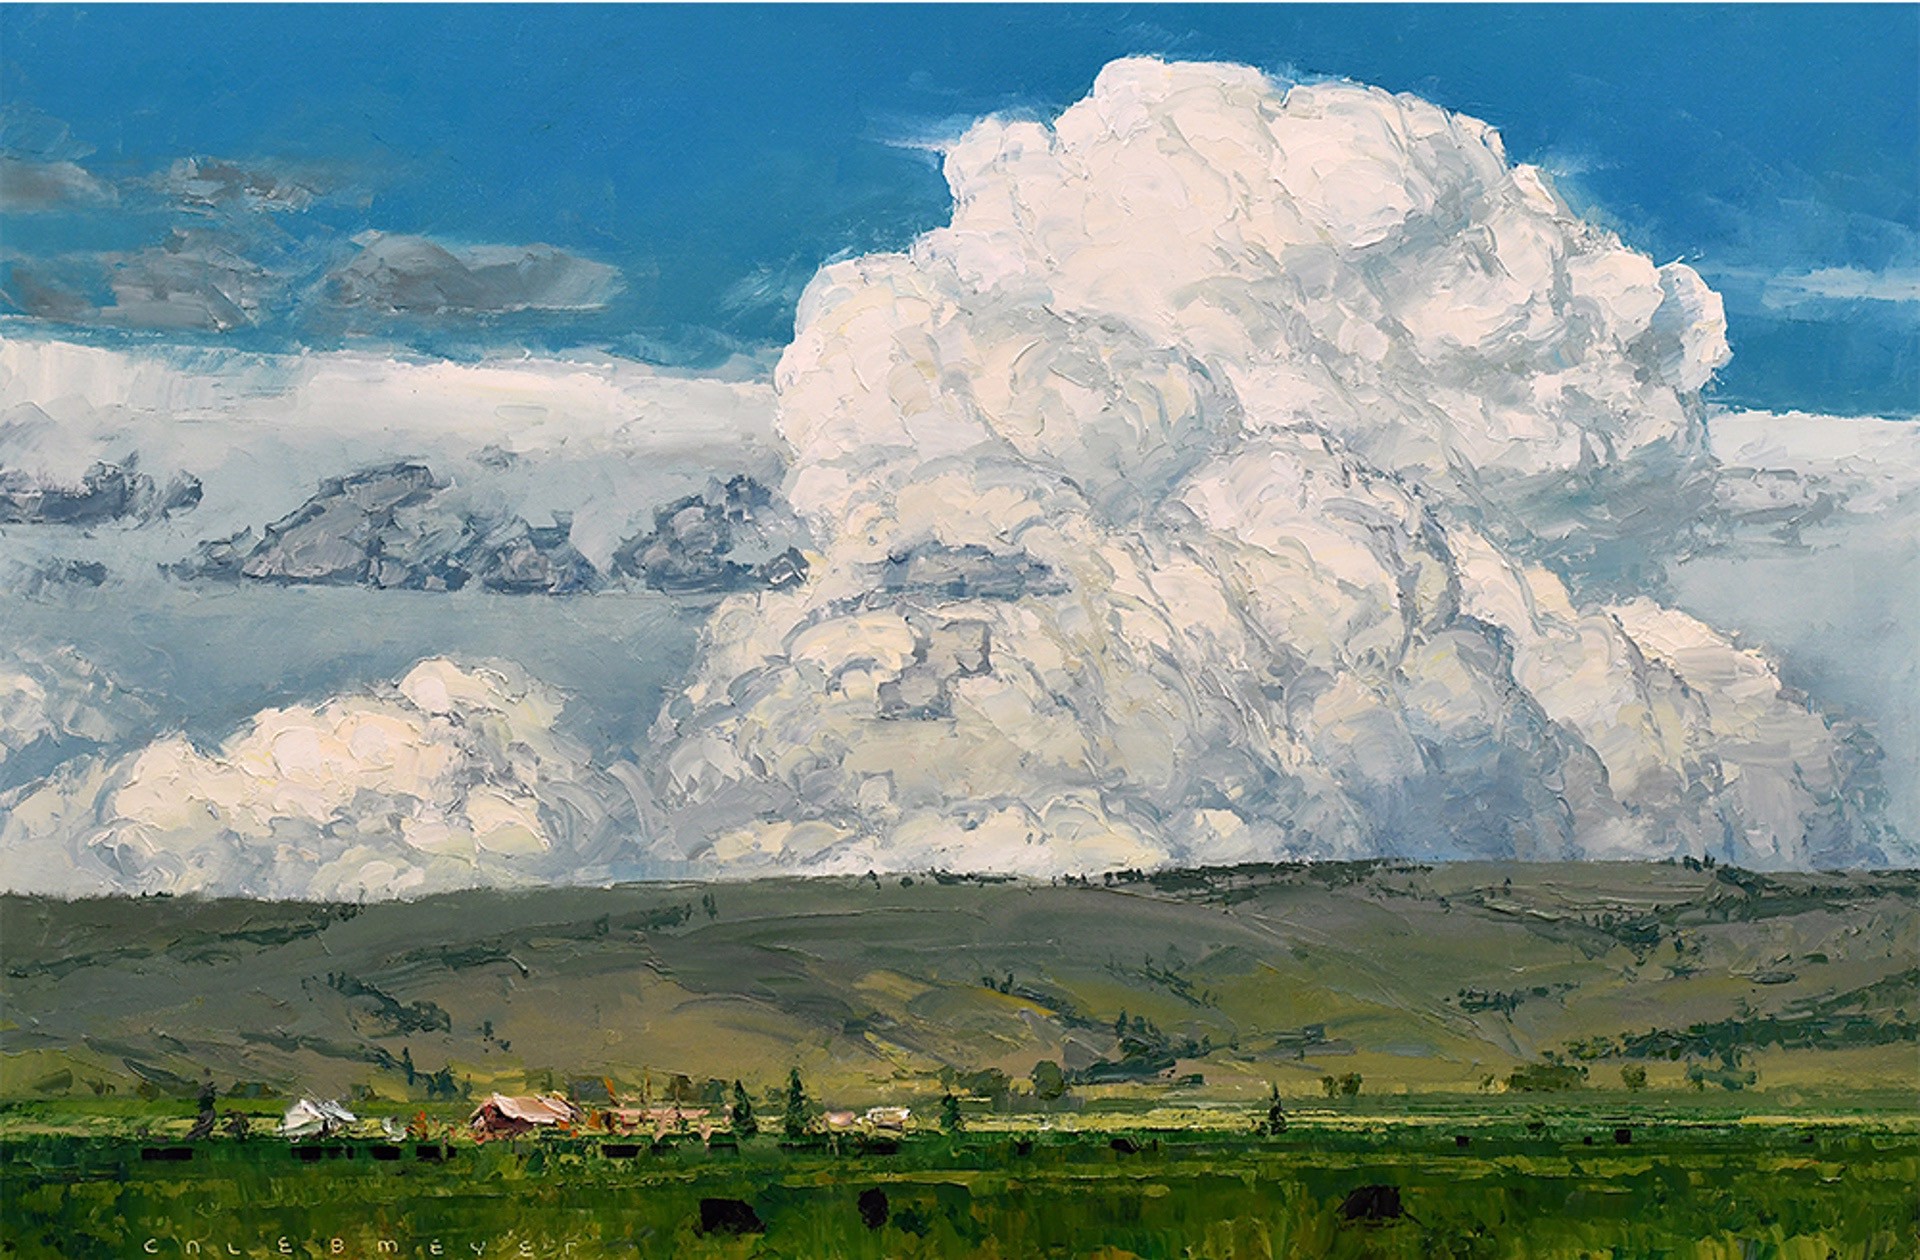 A Midsummer's Cloud by Caleb Meyer